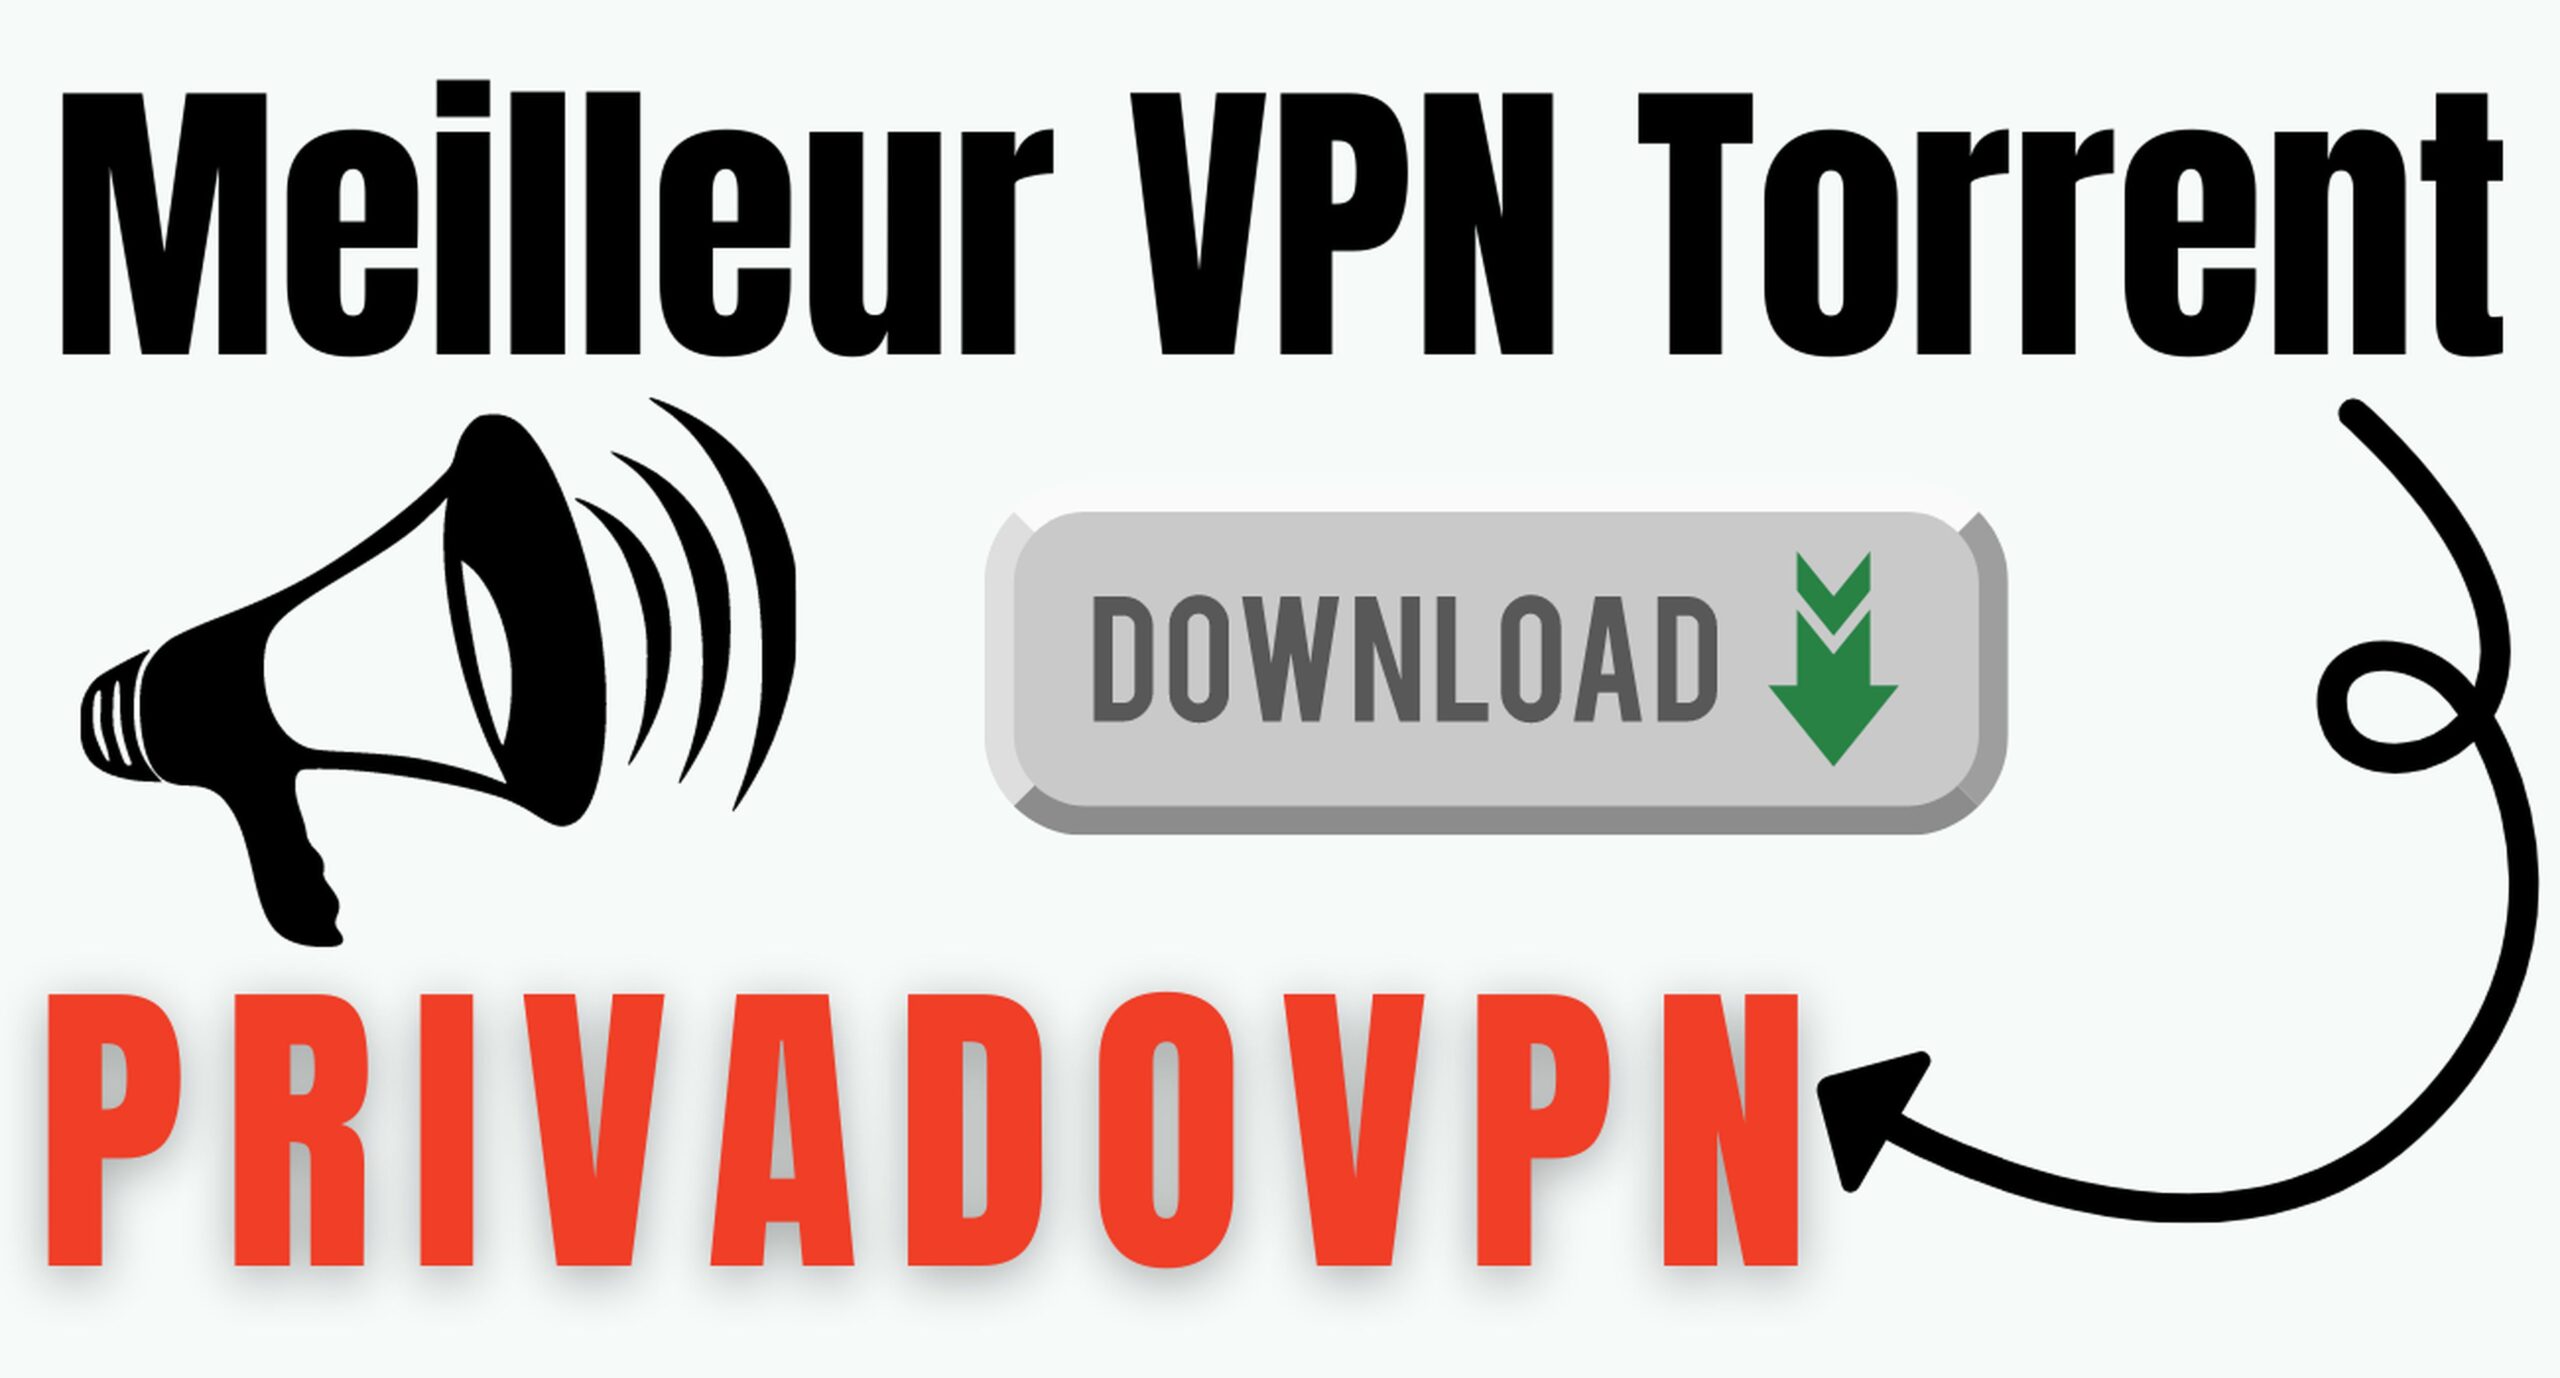 Meilleur VPN Torrent – Téléchargez anonymement avec PrivadoVPN